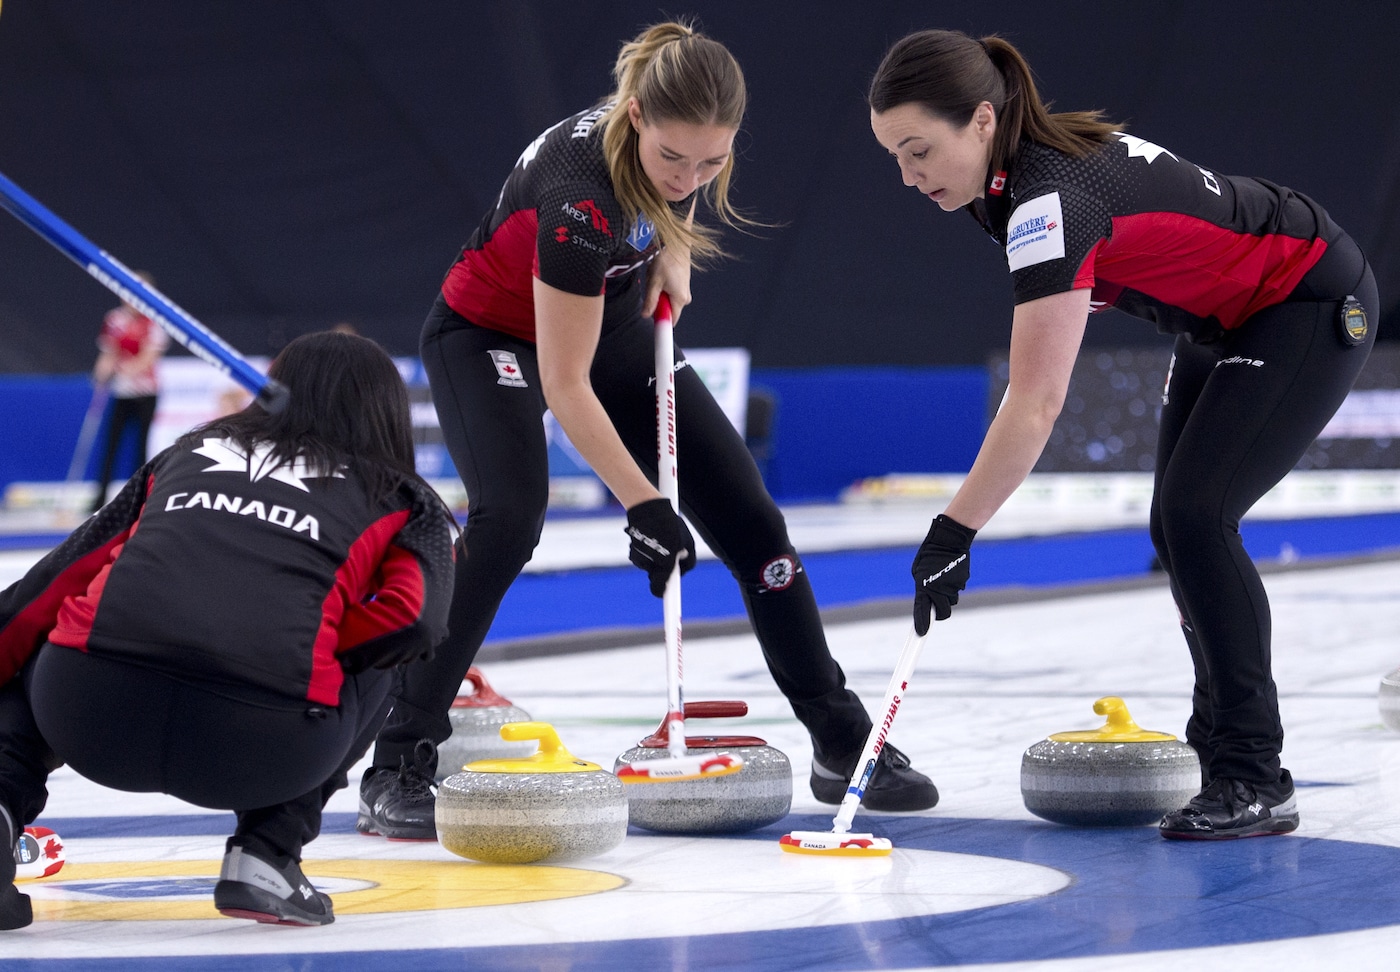 Curling Canada Team Canada eliminated